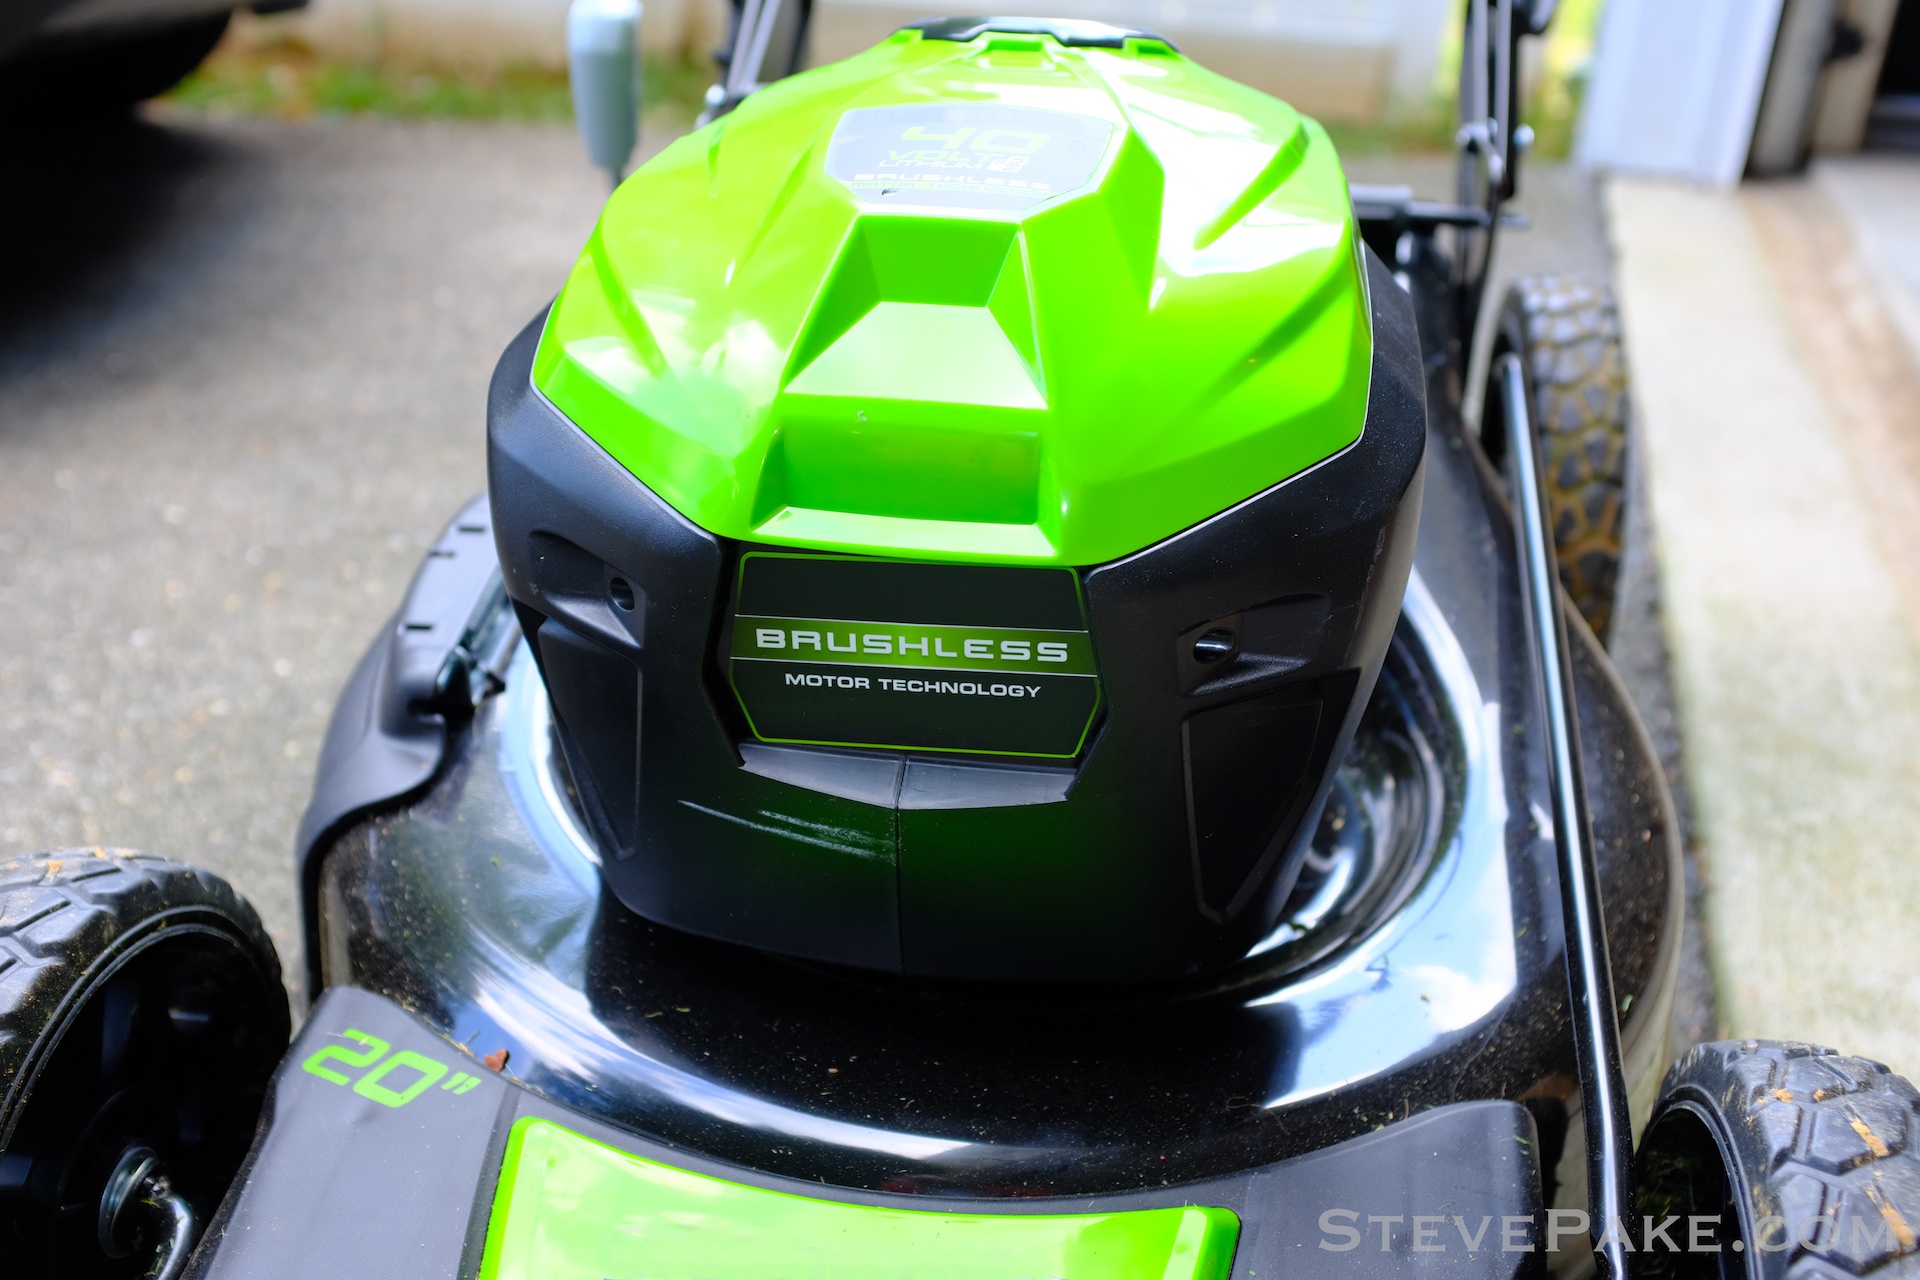 MAXLANDER 40V Cordless Lawn Mower 15 inch Brushless Motor – Maxlander